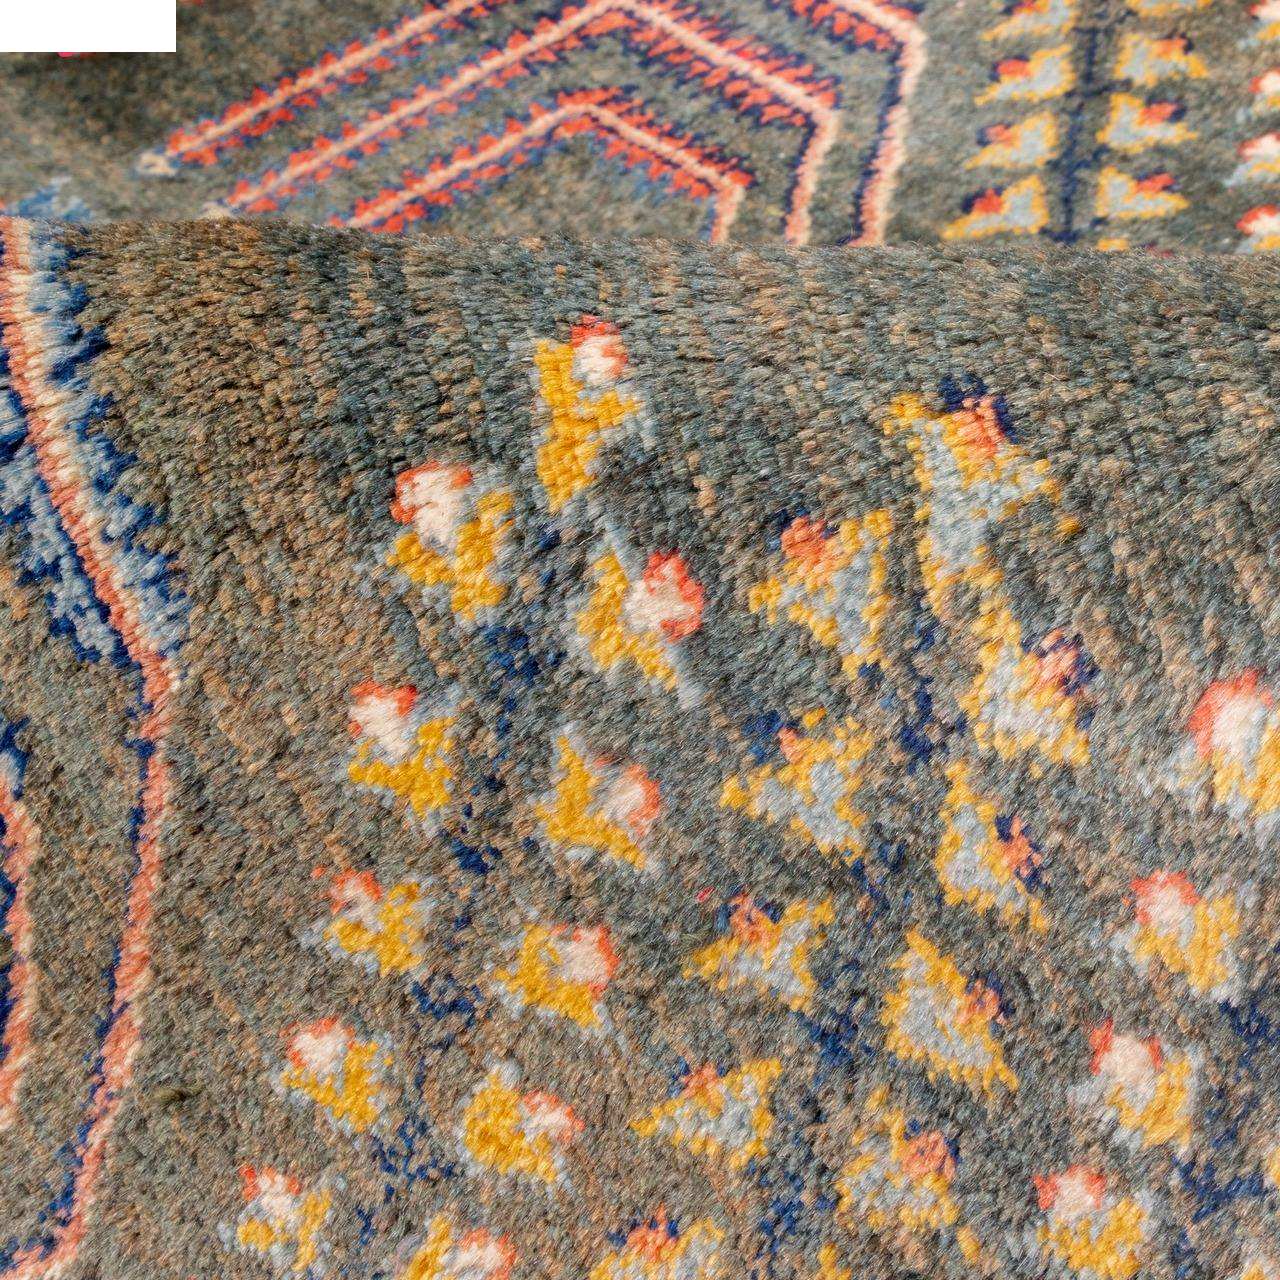 C Persia 3 meter handmade carpet code 171652